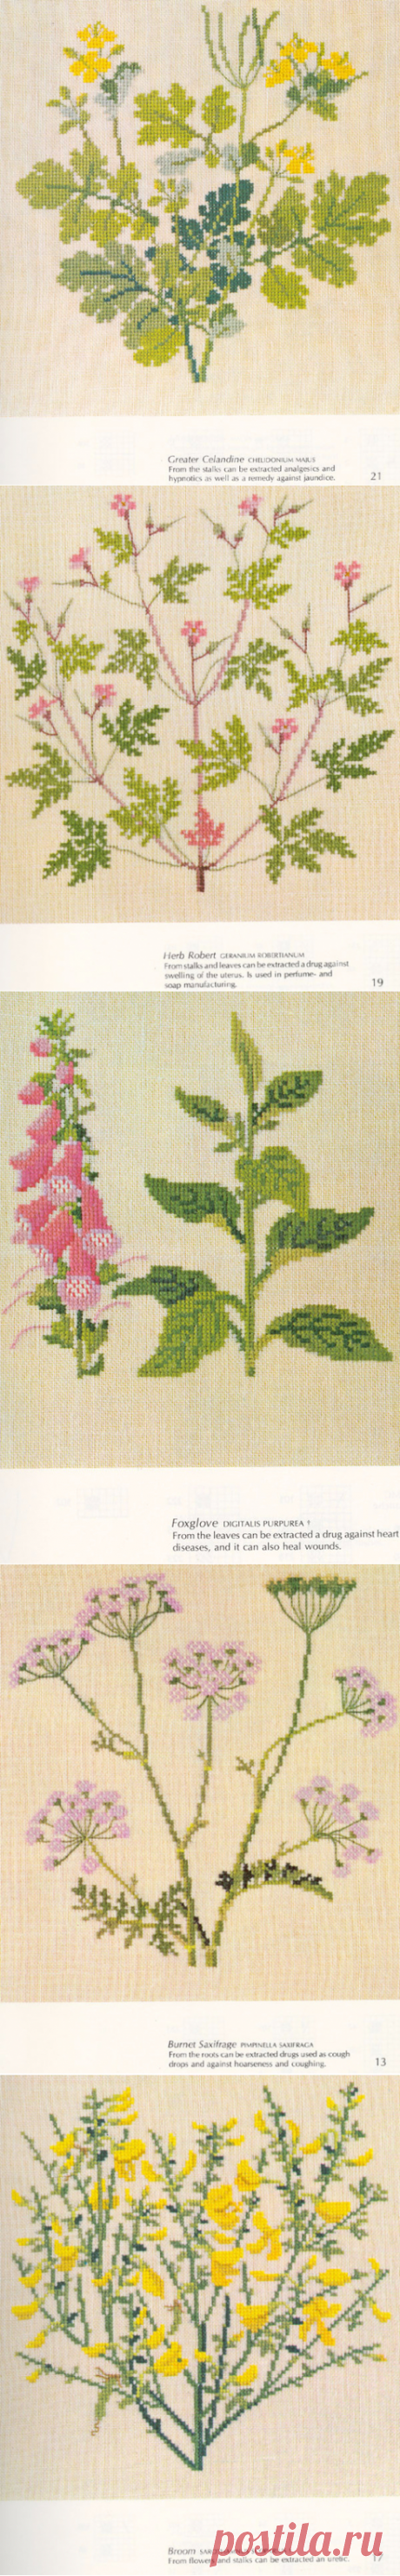 Ботаническая вышивка крестом — схемы вышивок на тему "Полевые цветы"